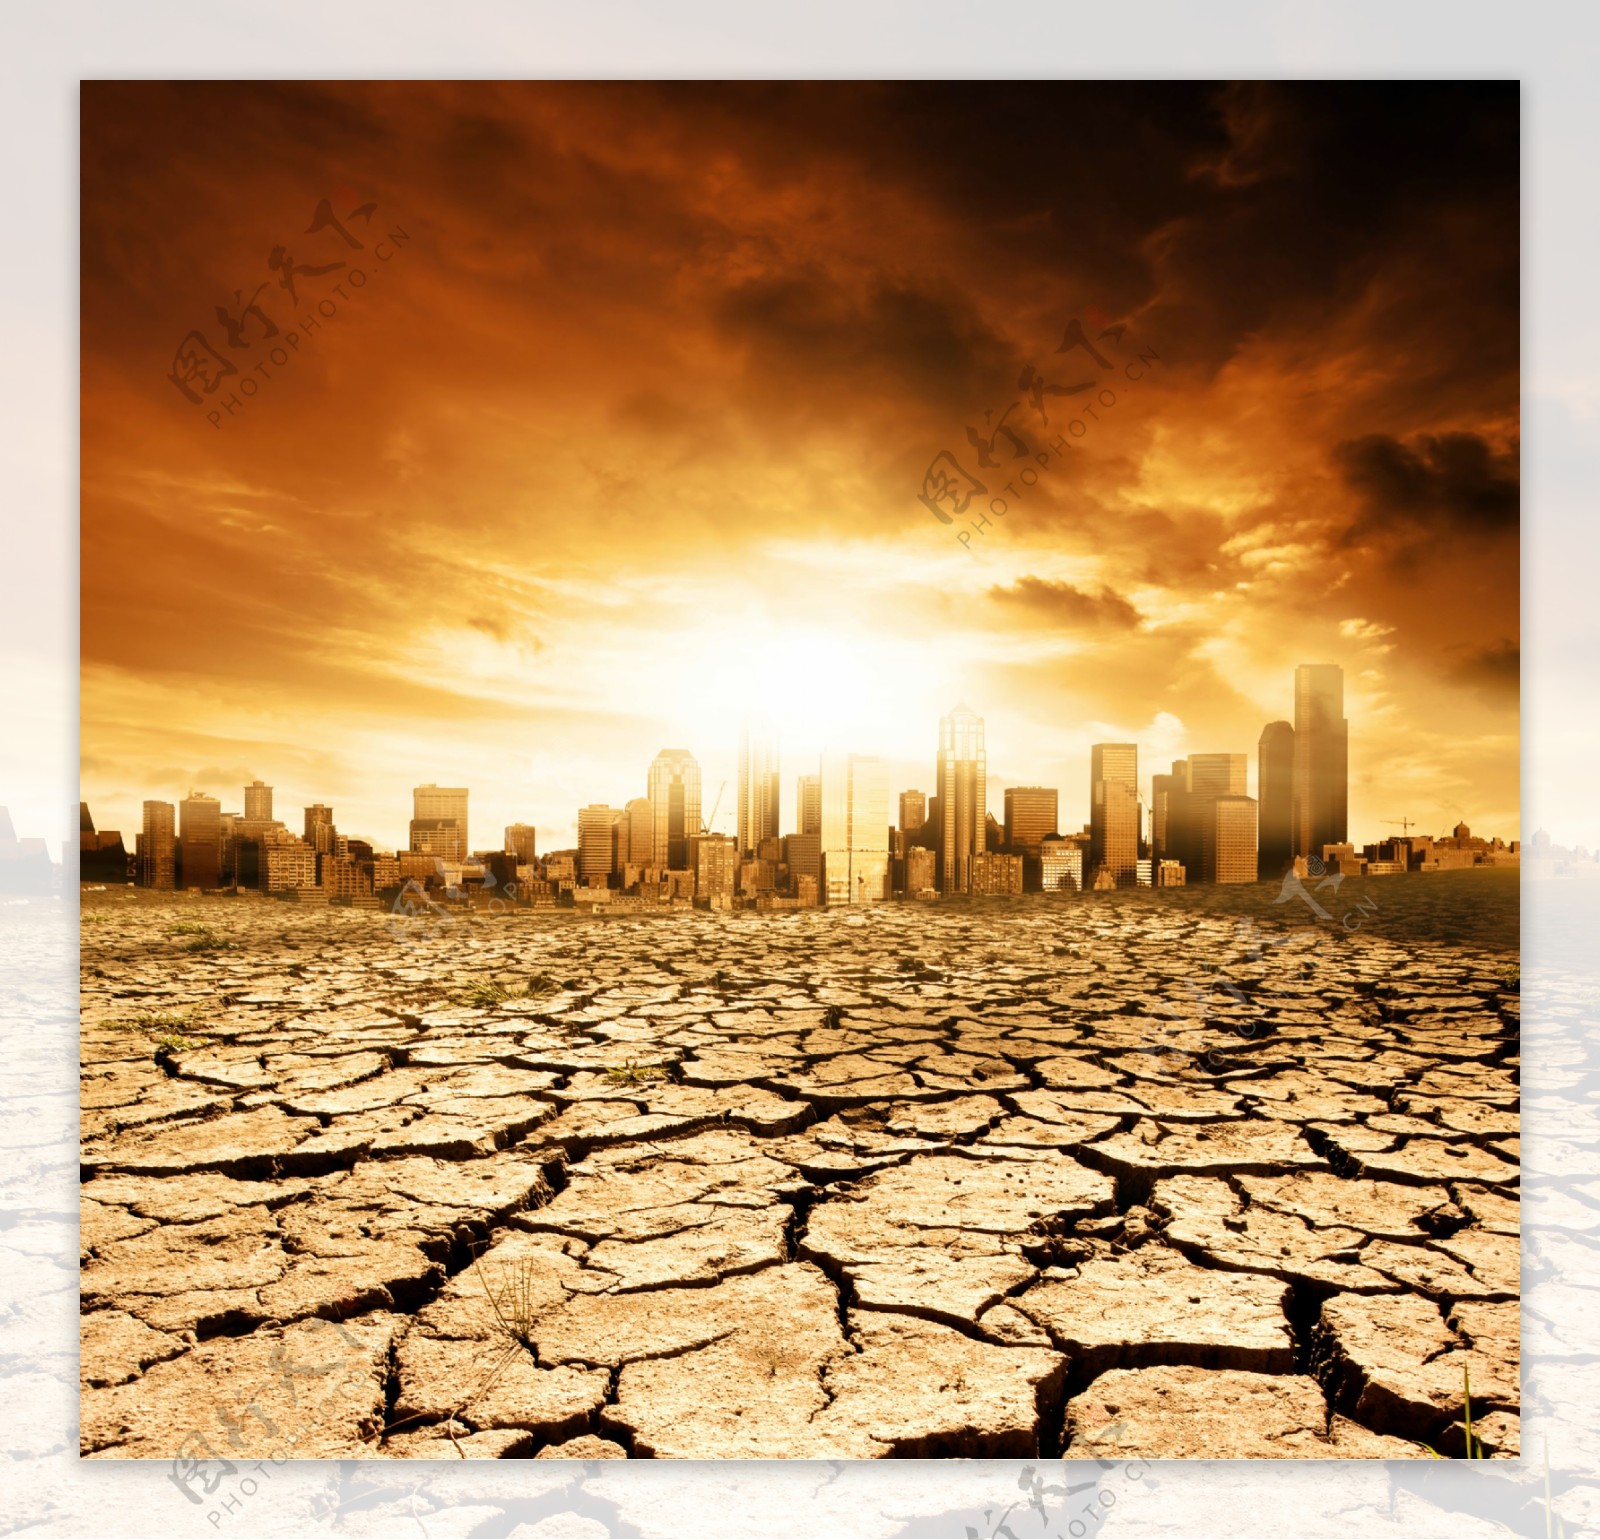 地球警告自然灾害干旱干涸的地表